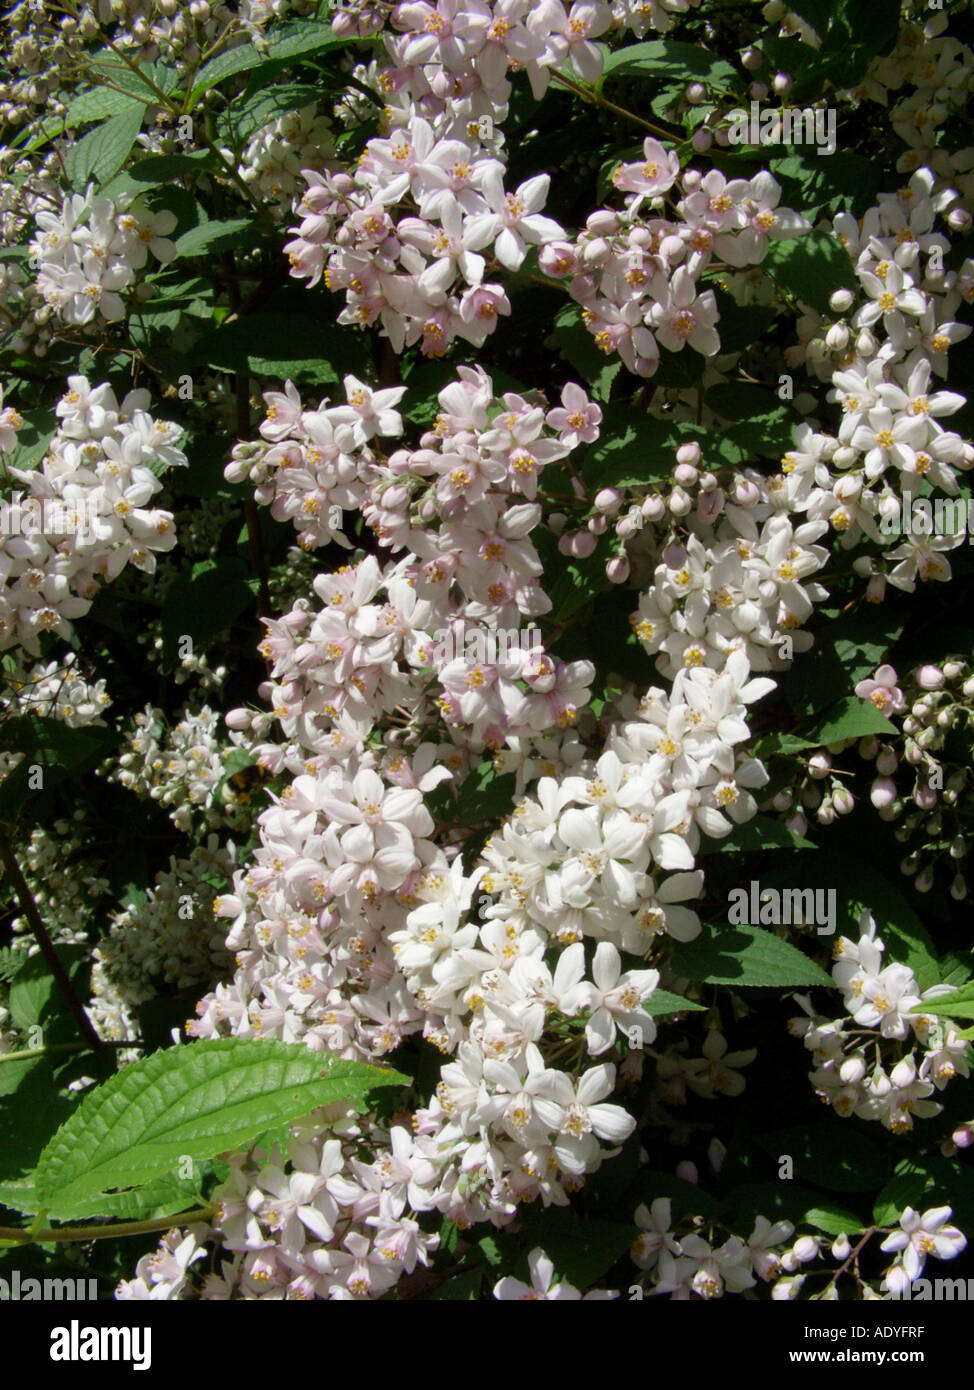 deutzia (Deutzia x elegantissima, Deutzia elegantissima, Deutzia purpurascens x Deutzia scabra), blooming bush Stock Photo